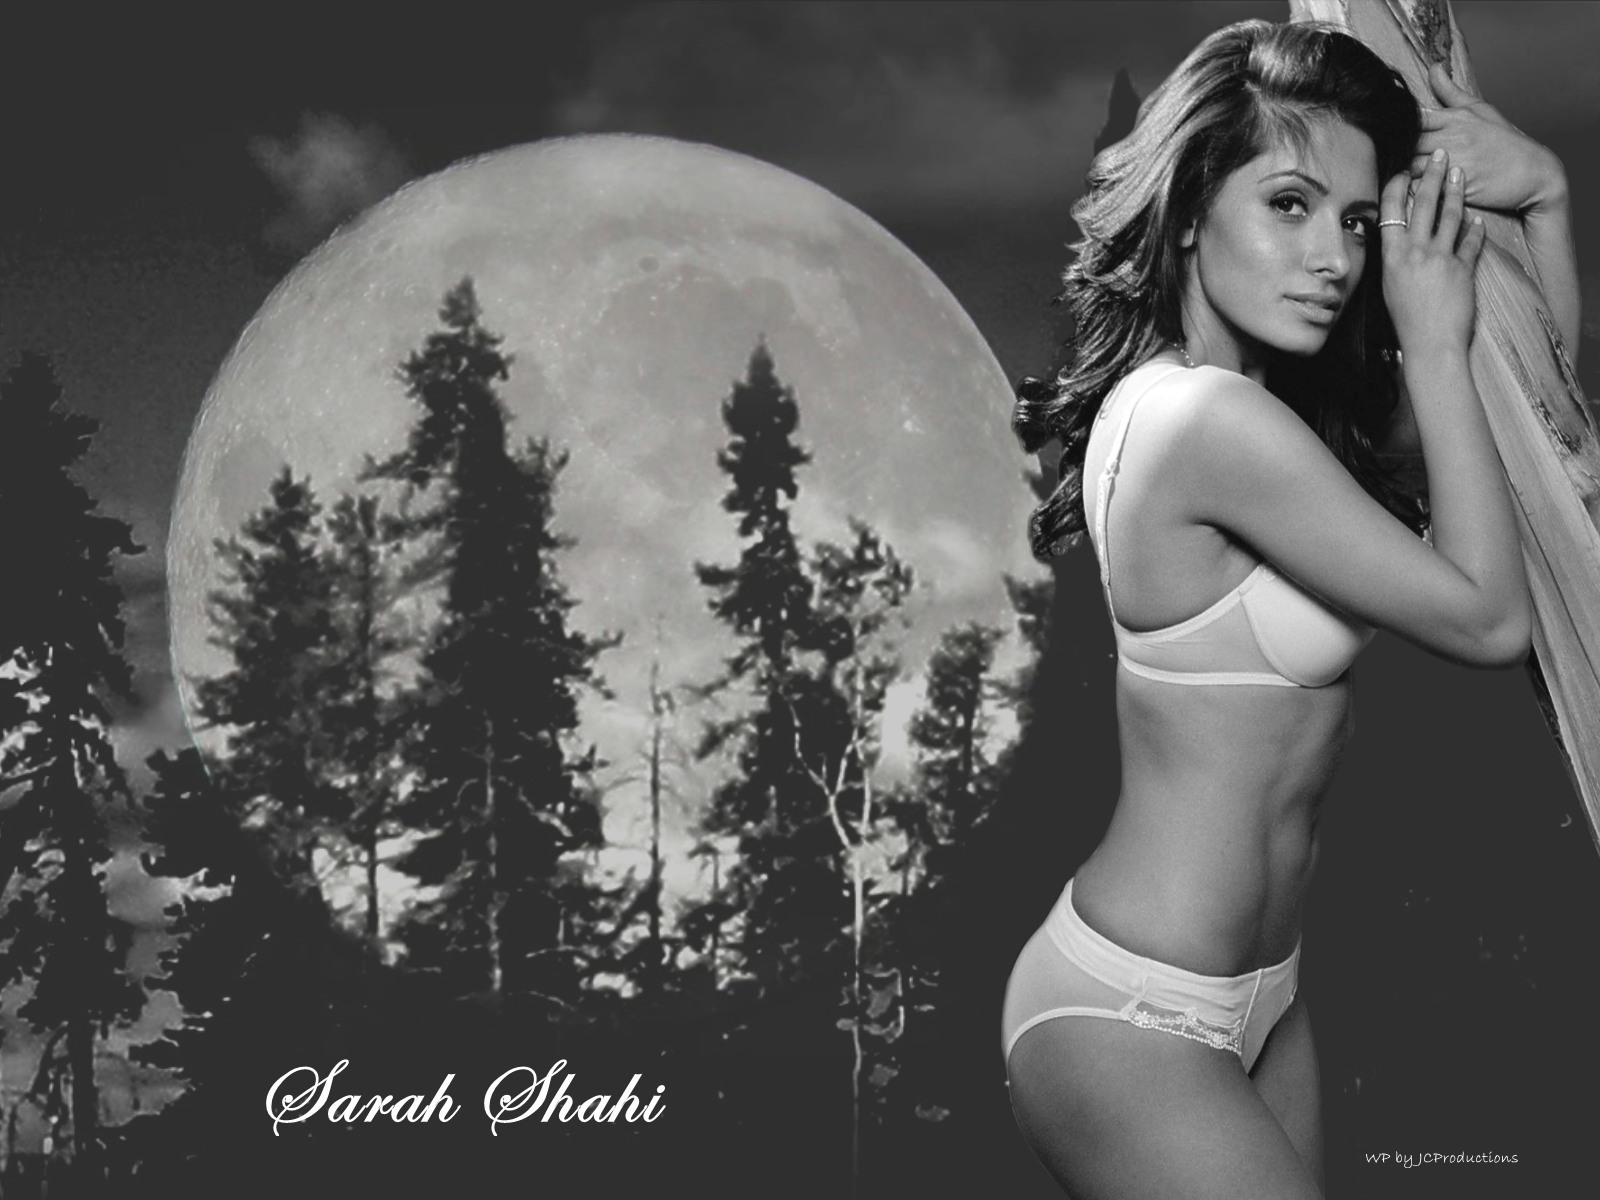 Sarah shahi sexy